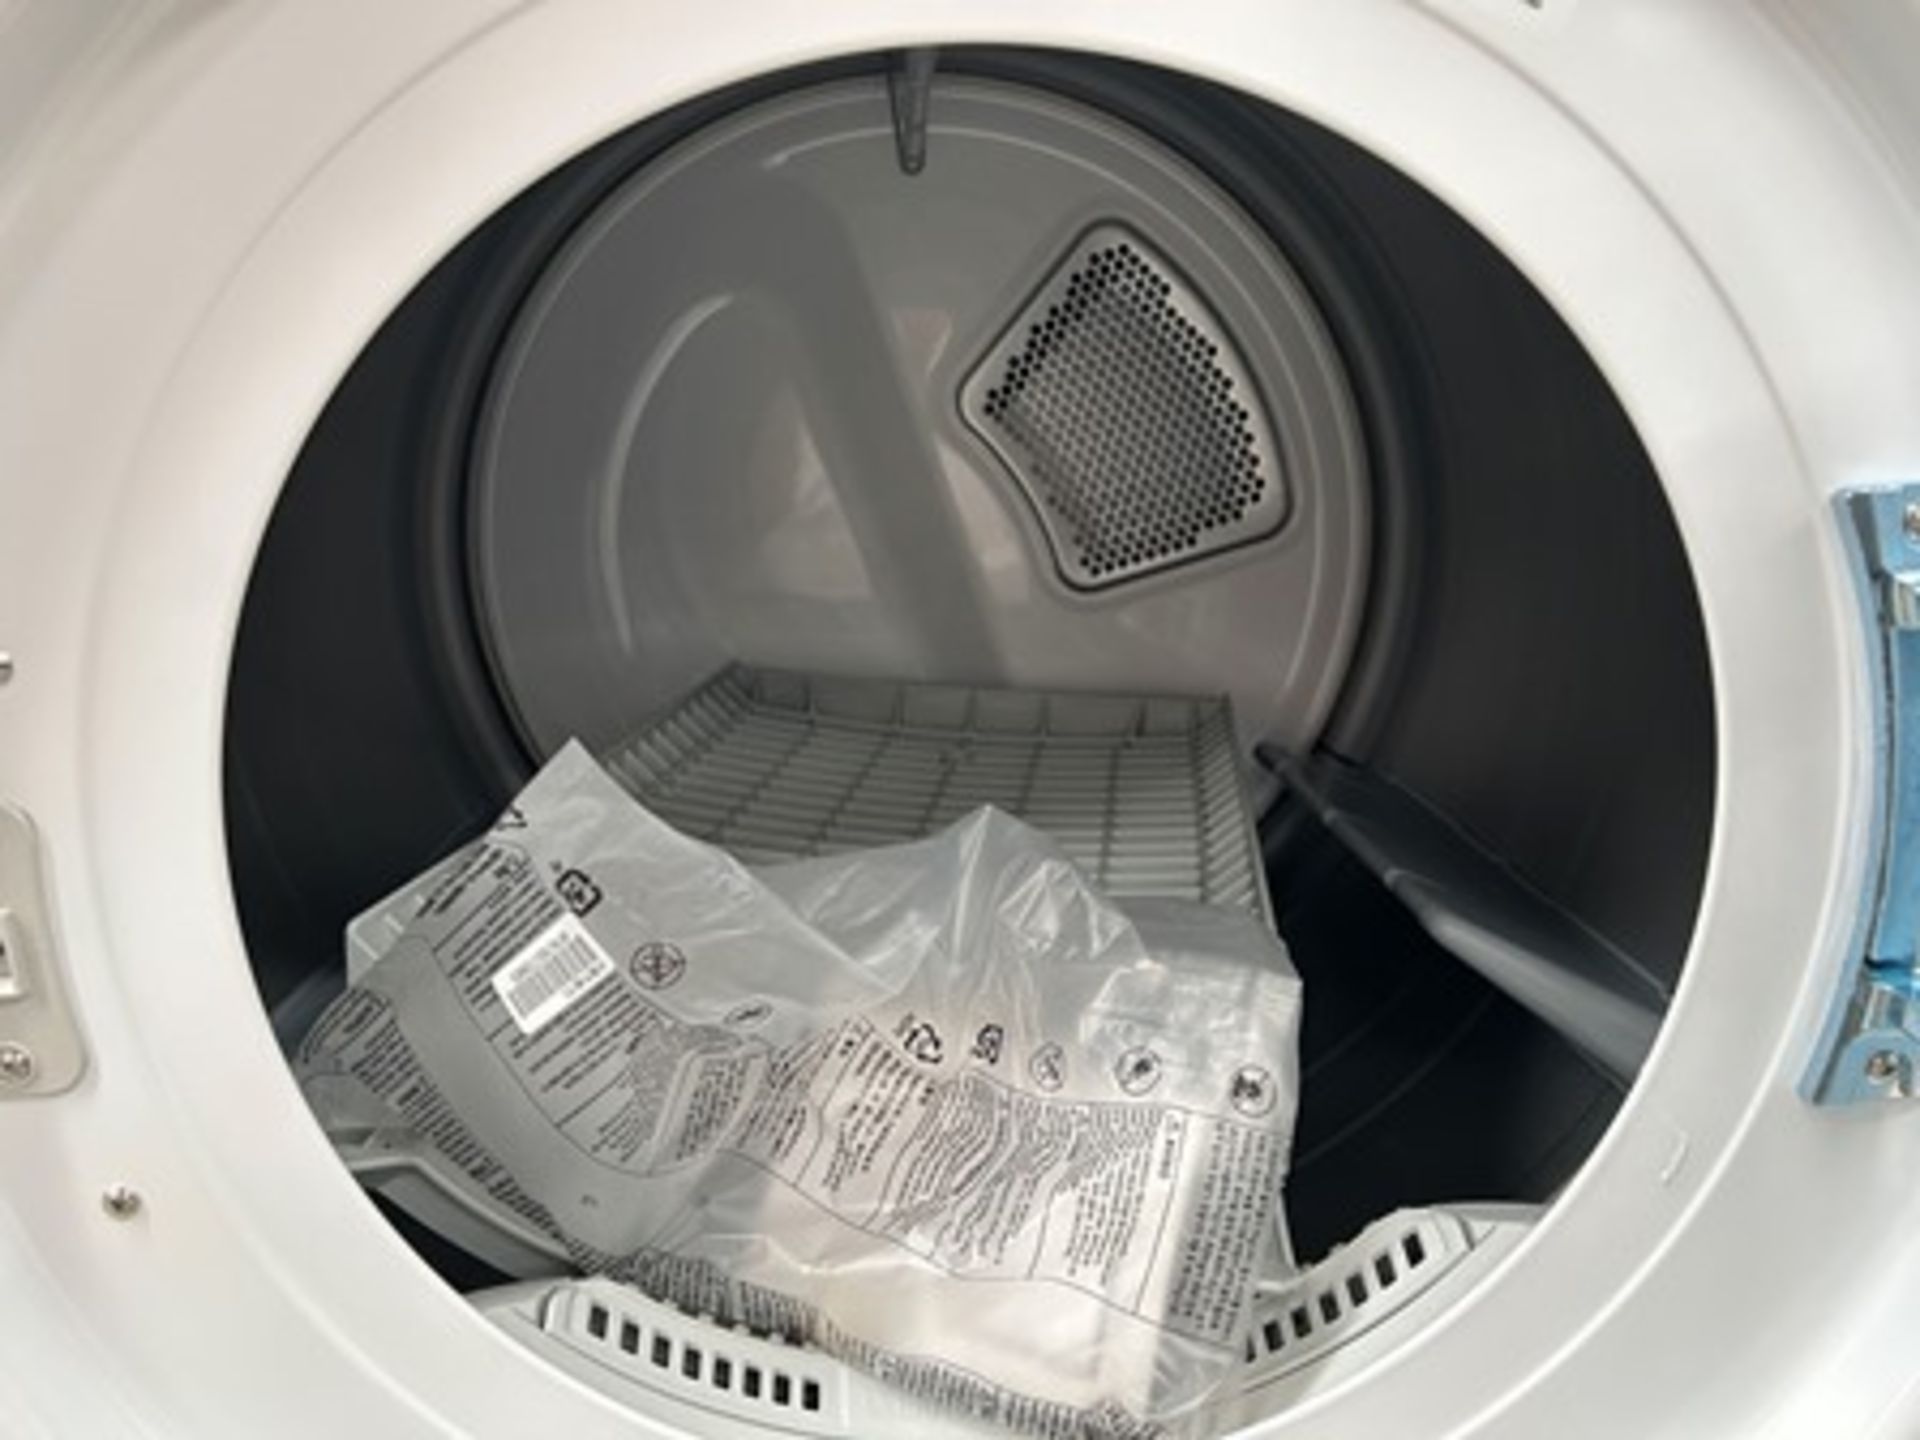 Combo lavadora y Secadora contiene: 1 Lavadora de 20 KG Marca LG, Modelo WM202V26W, Serie 0X531, Co - Image 4 of 8